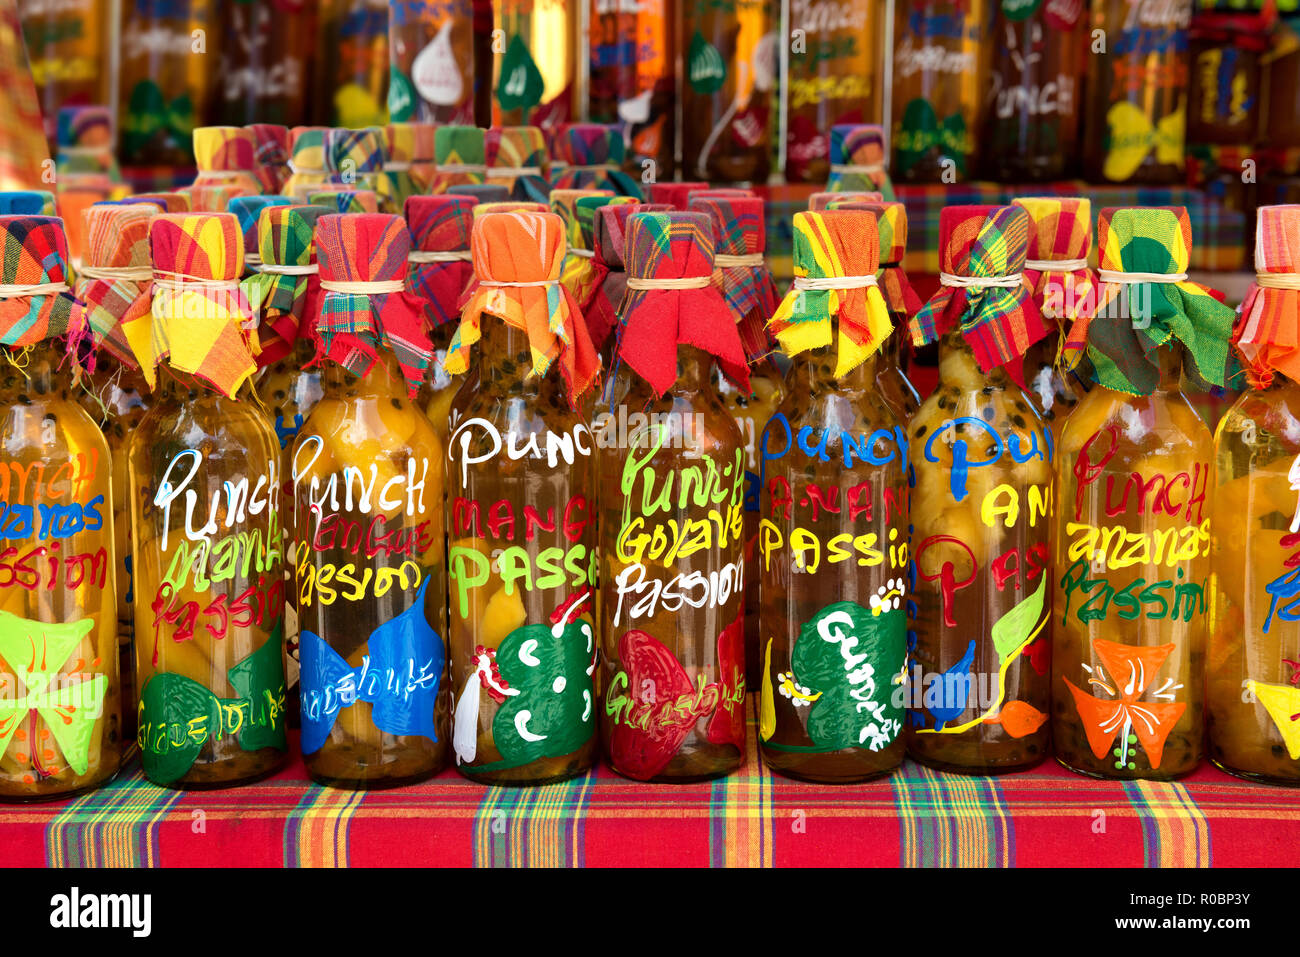 Viele verschiedene farbige Punch (Rum und tropische Früchte) Flaschen in einer Reihe auf einem typischen Markt, Guadeloupe, French West Indies. Stockfoto